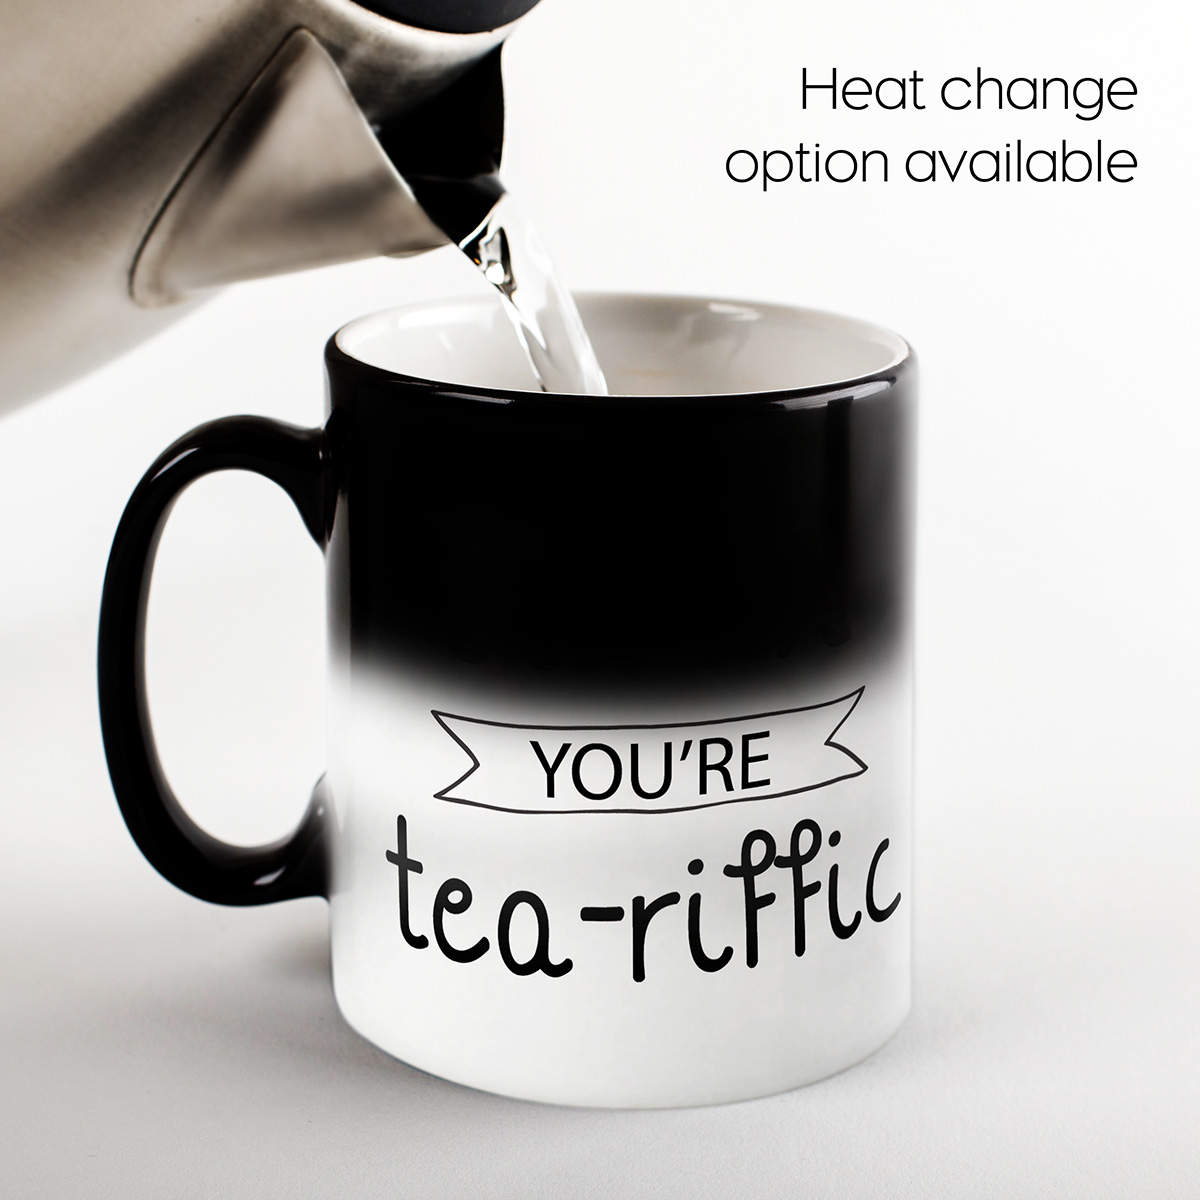 Personalised Mug - Tea-riffic